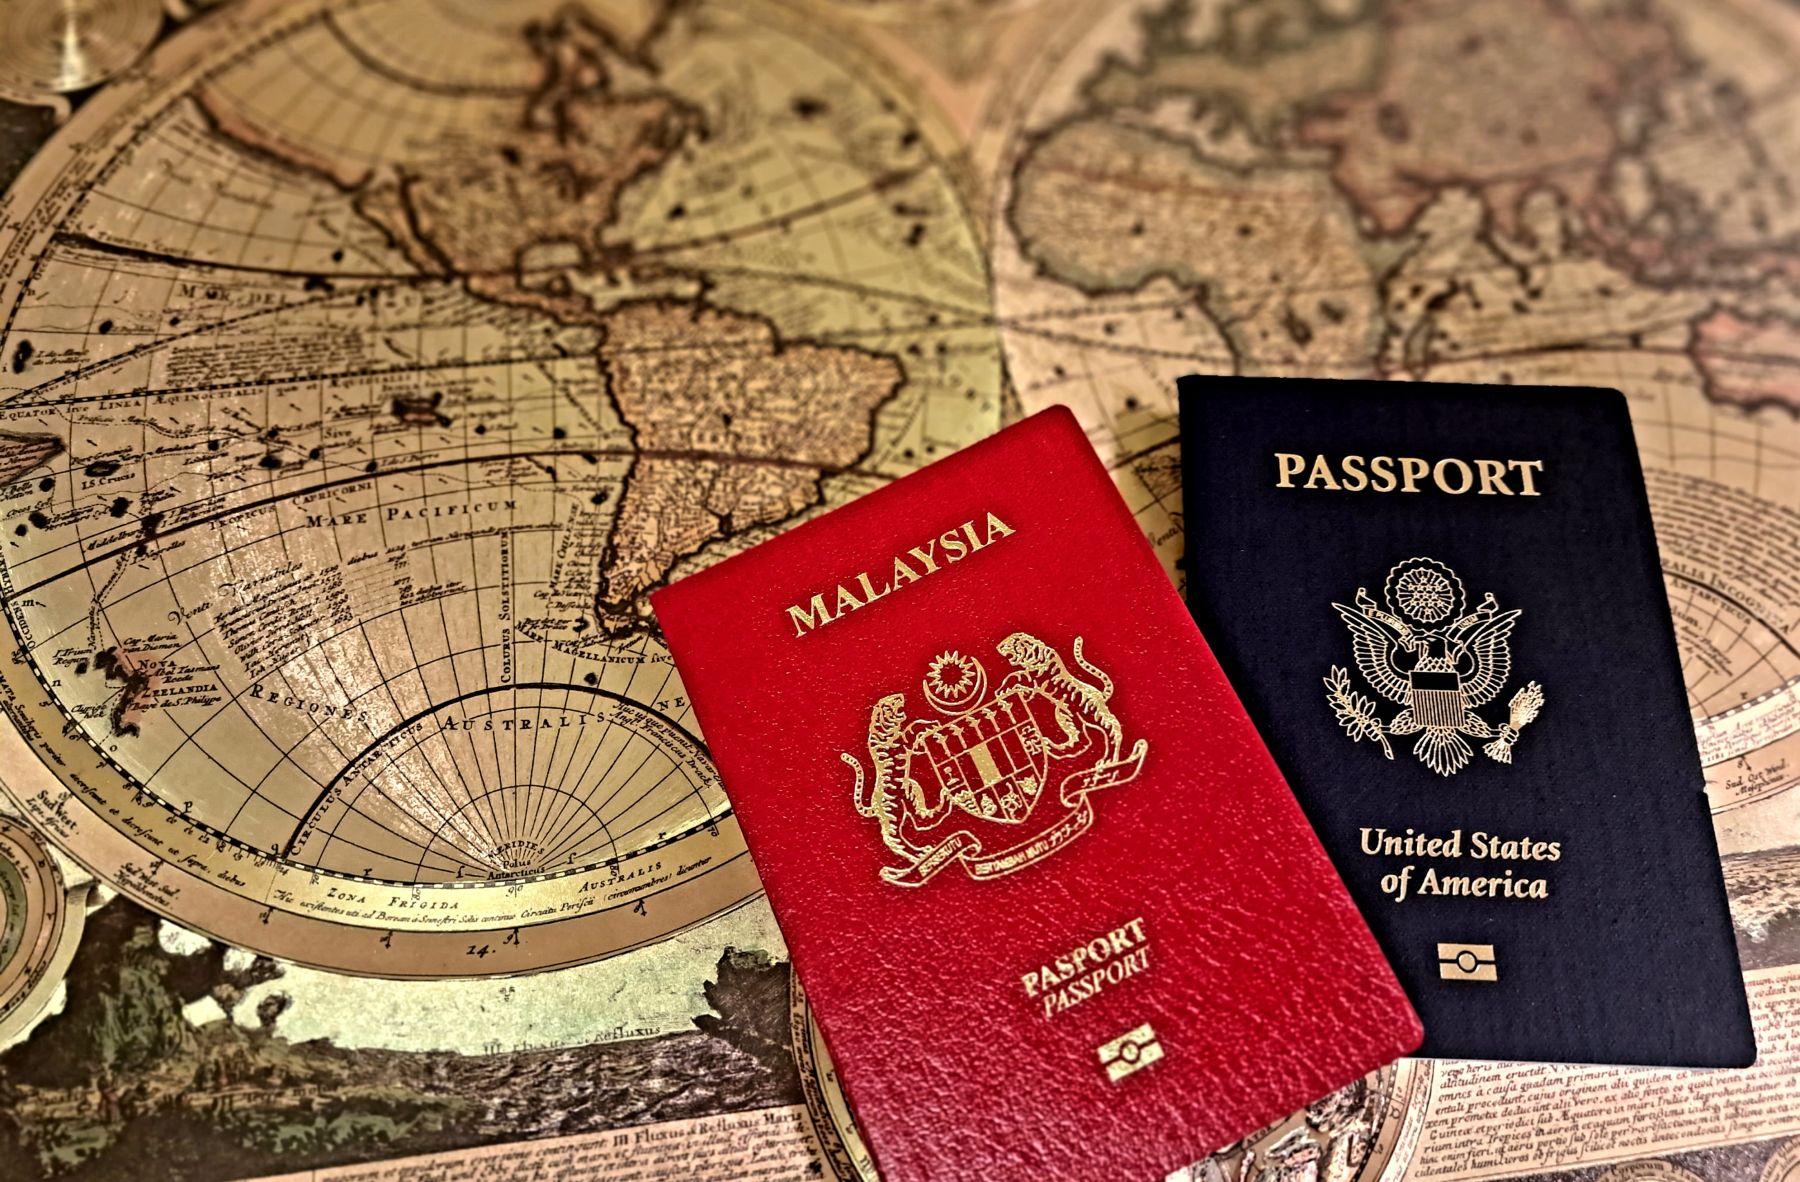 Two passports sitting on a world map